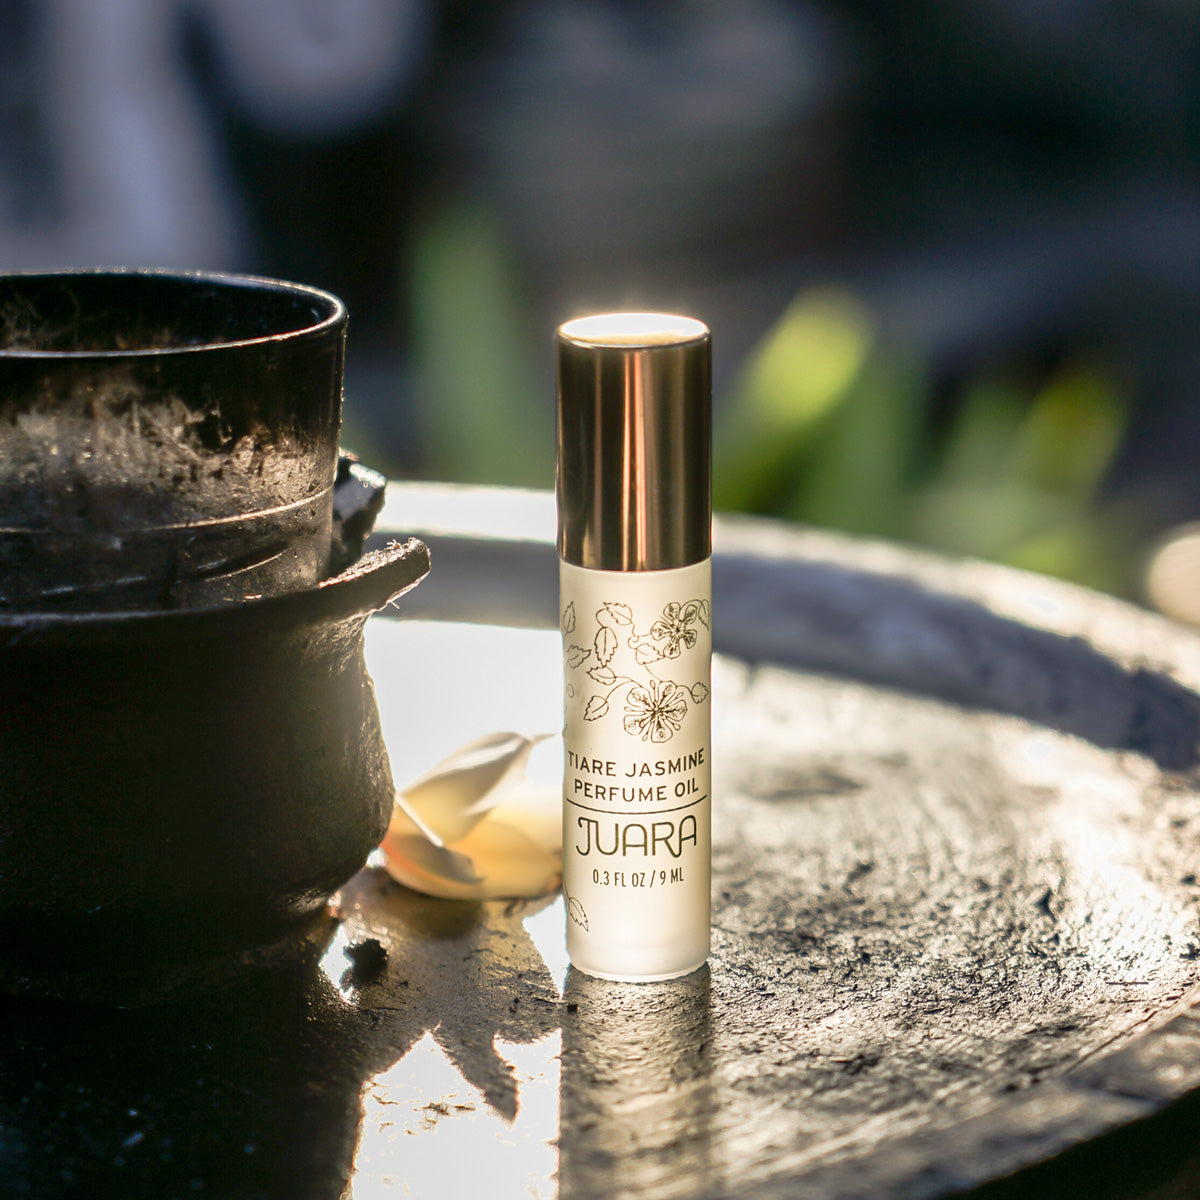 Tiare Jasmine Perfume Oil, 0.3 oz from JUARA Skincare